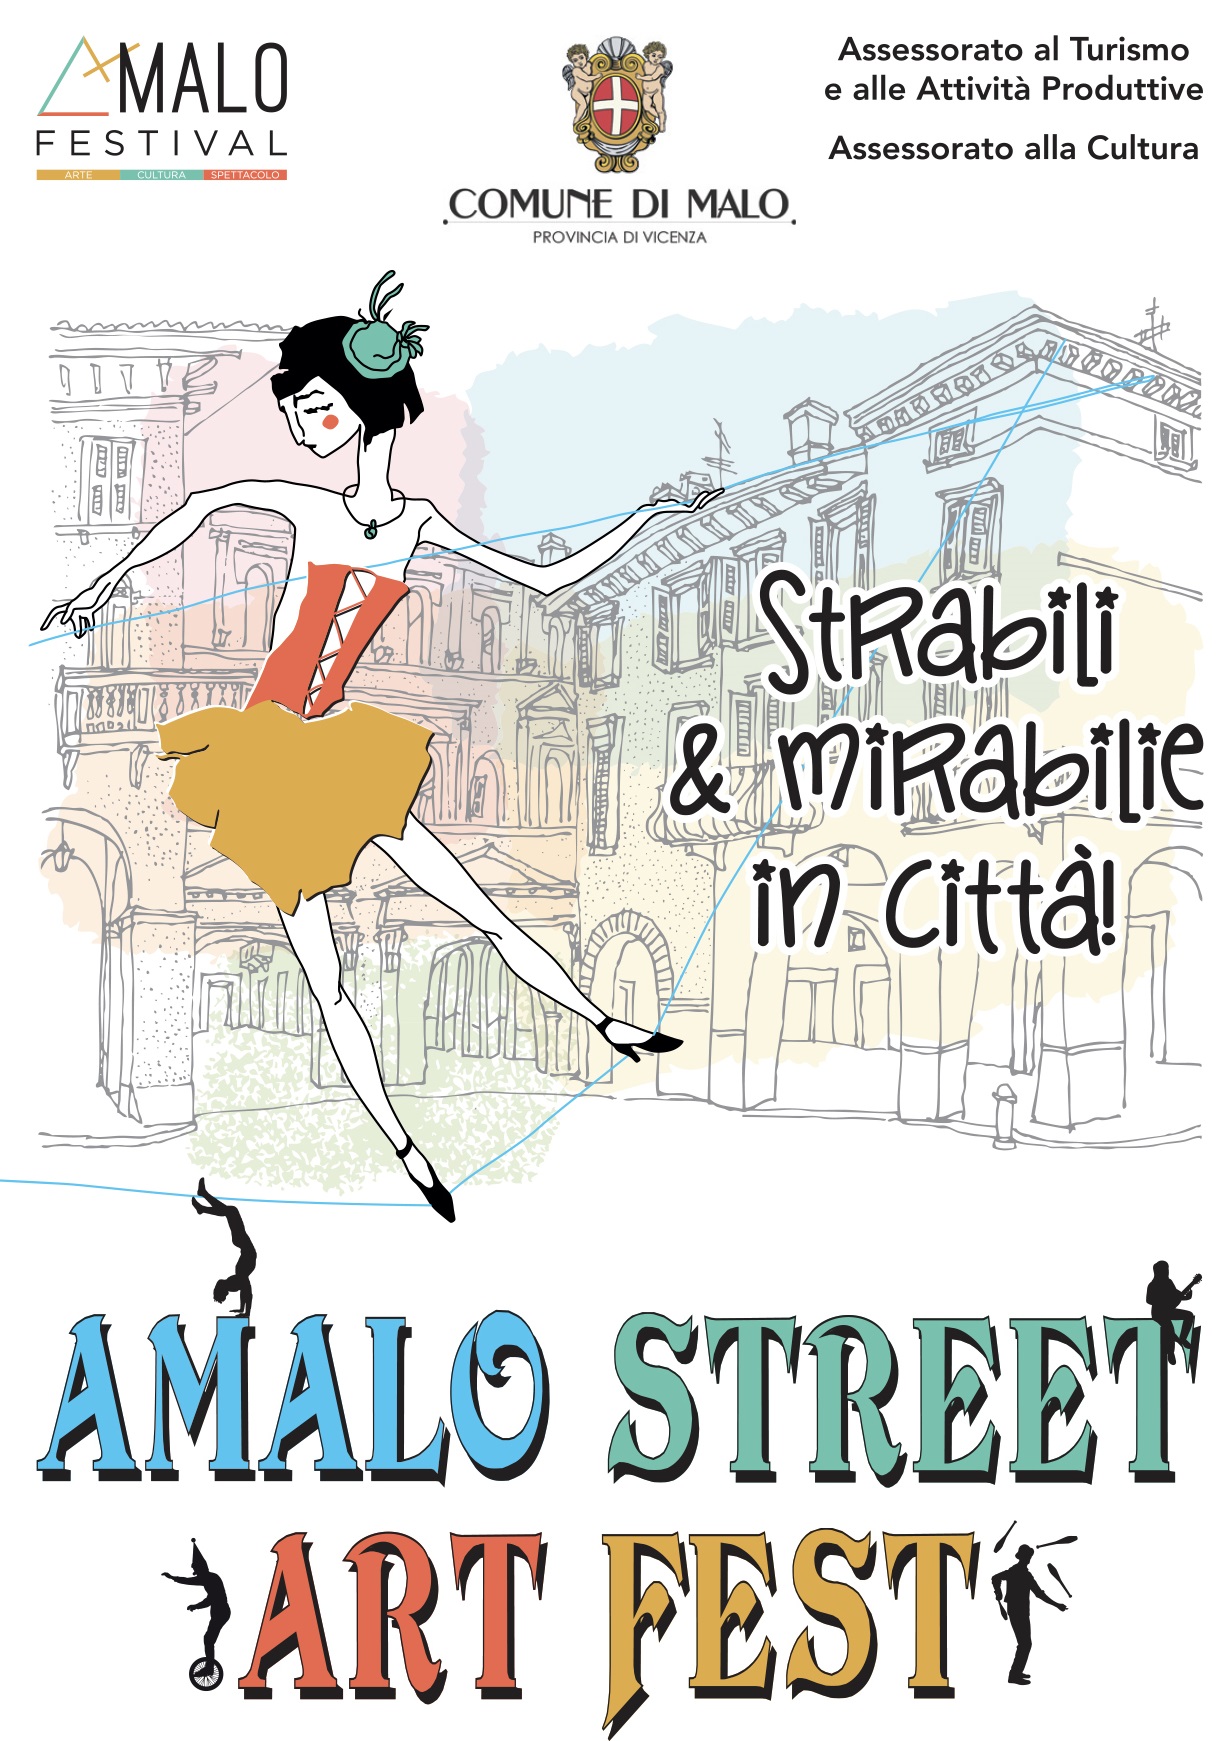 AMALO STREET ART FEST